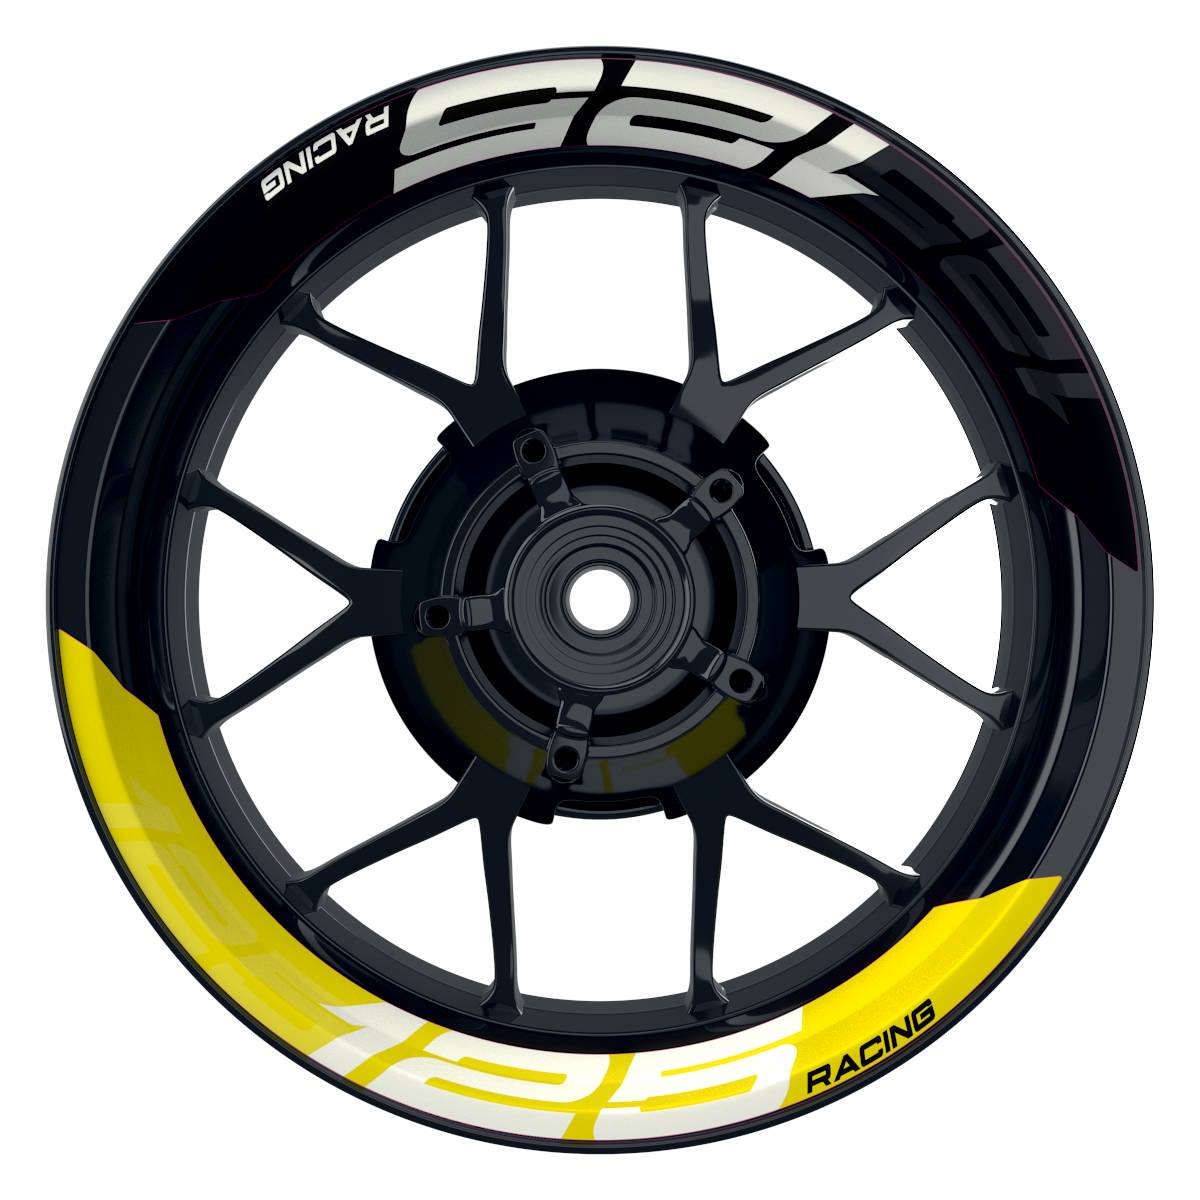 Wheelsticker Felgenaufkleber KTM Racing 125 halb halb V2 schwarz gelb Frontansicht